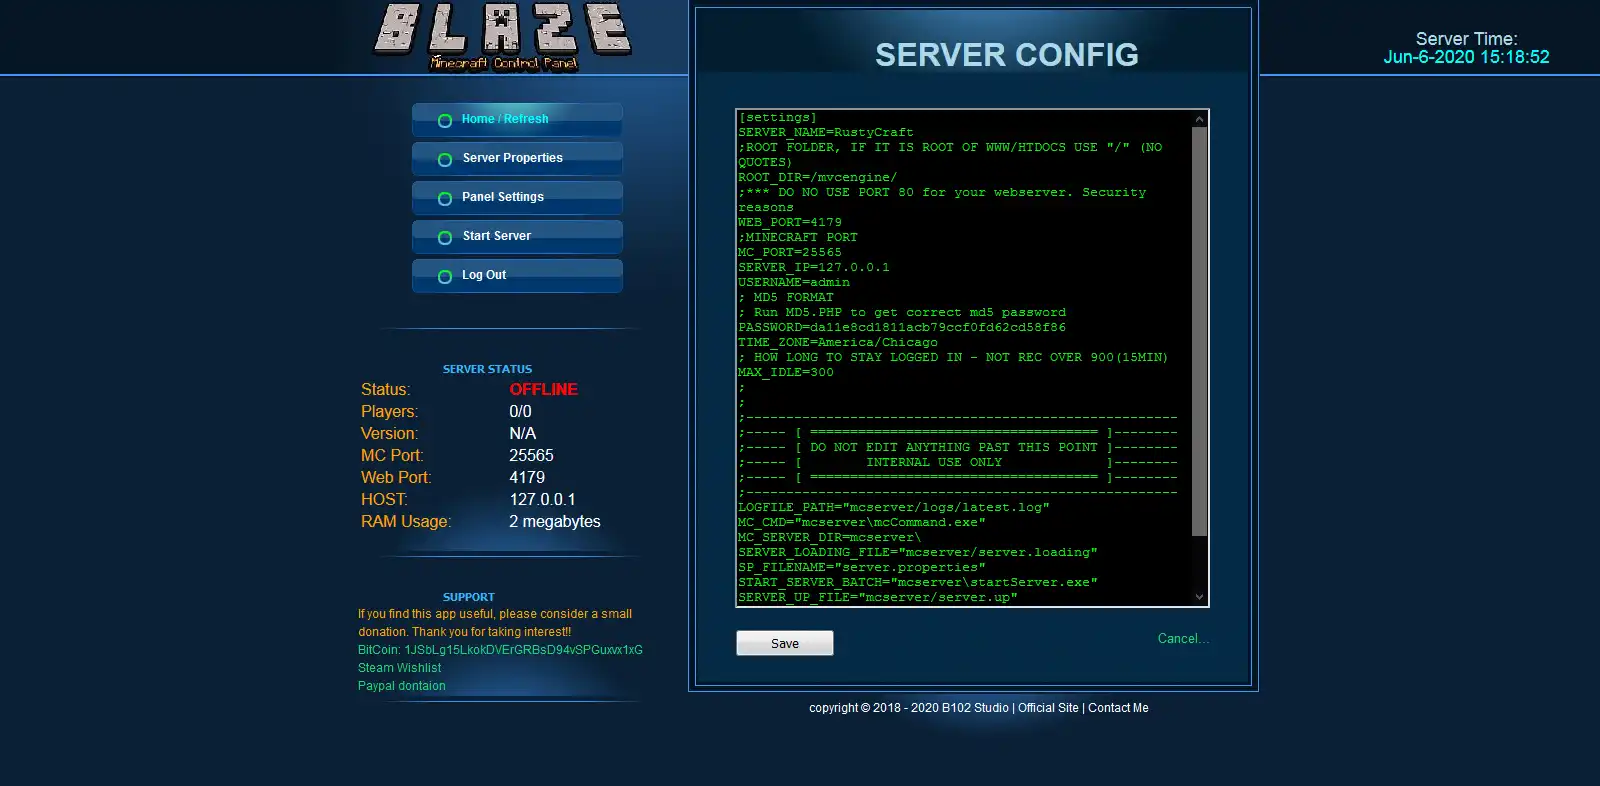 قم بتنزيل أداة الويب أو تطبيق الويب Blaze Minecraft Control Panel للتشغيل في Windows عبر الإنترنت عبر Linux عبر الإنترنت